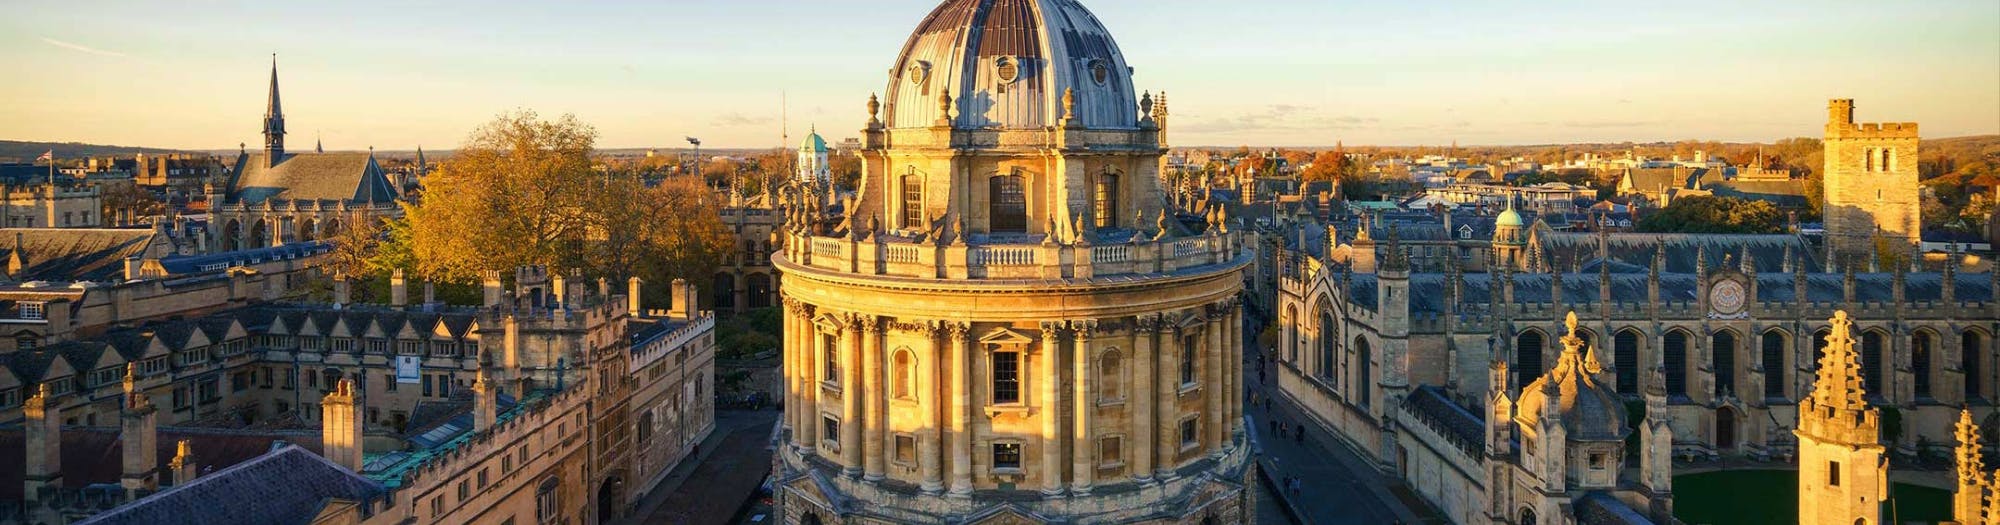 Excursão guiada a Oxford e Cambridge saindo de Londres